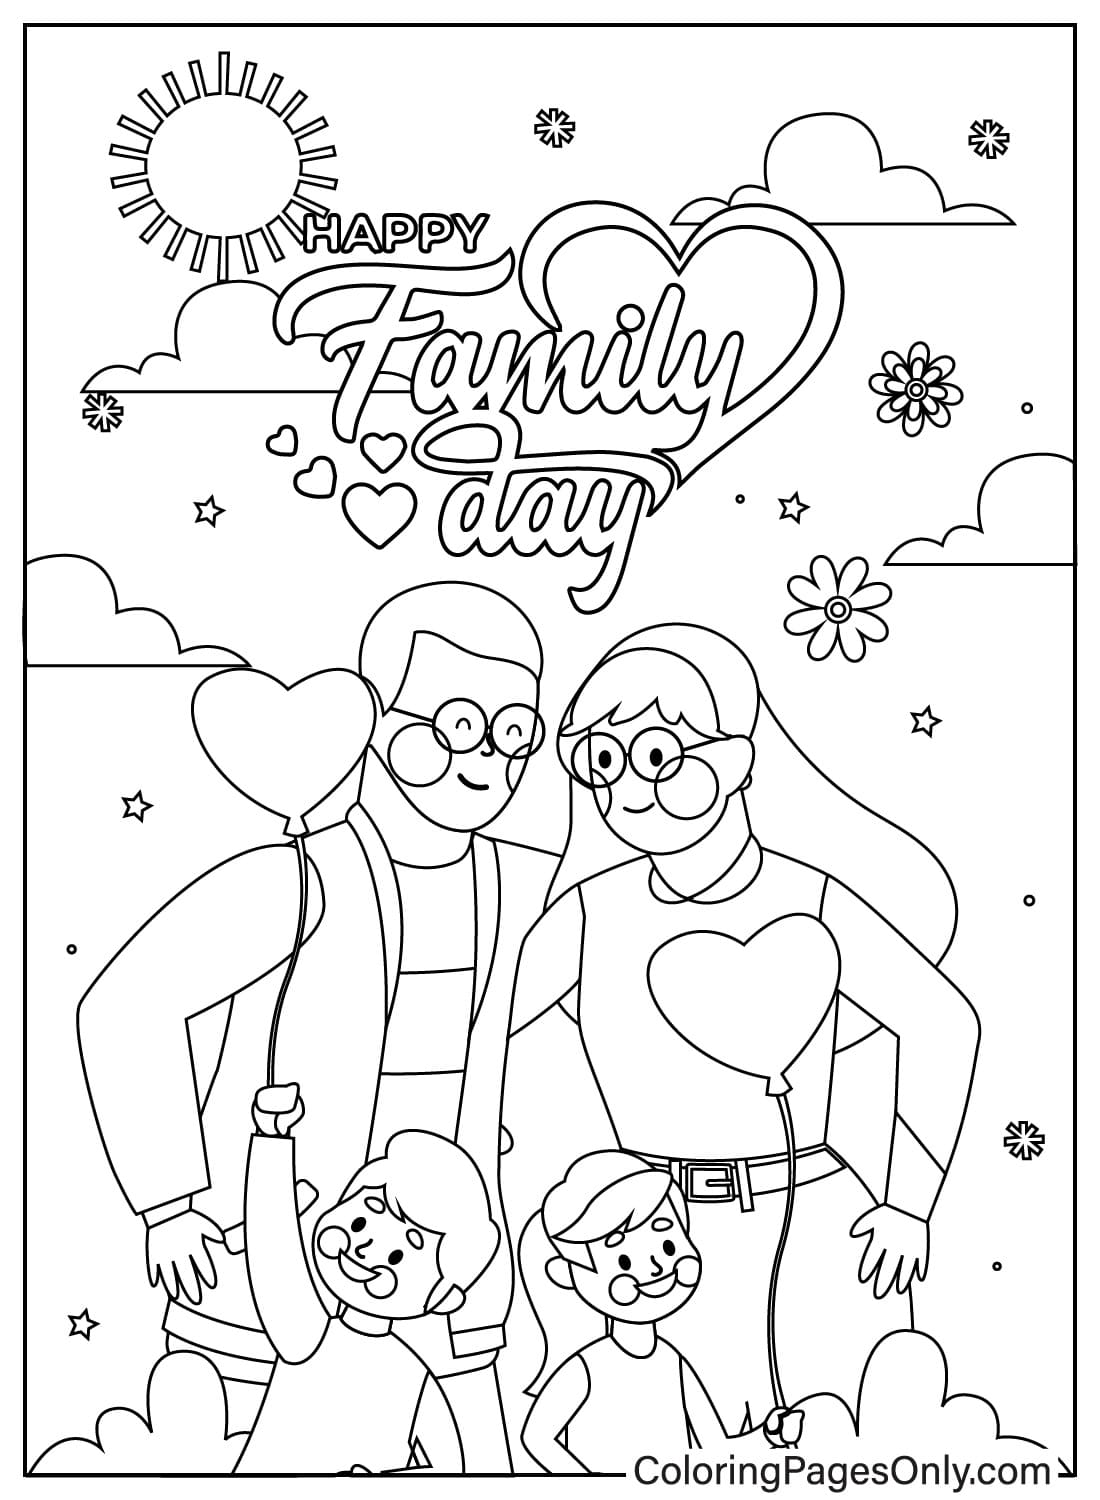 Página colorida do Dia da Família do Dia da Família